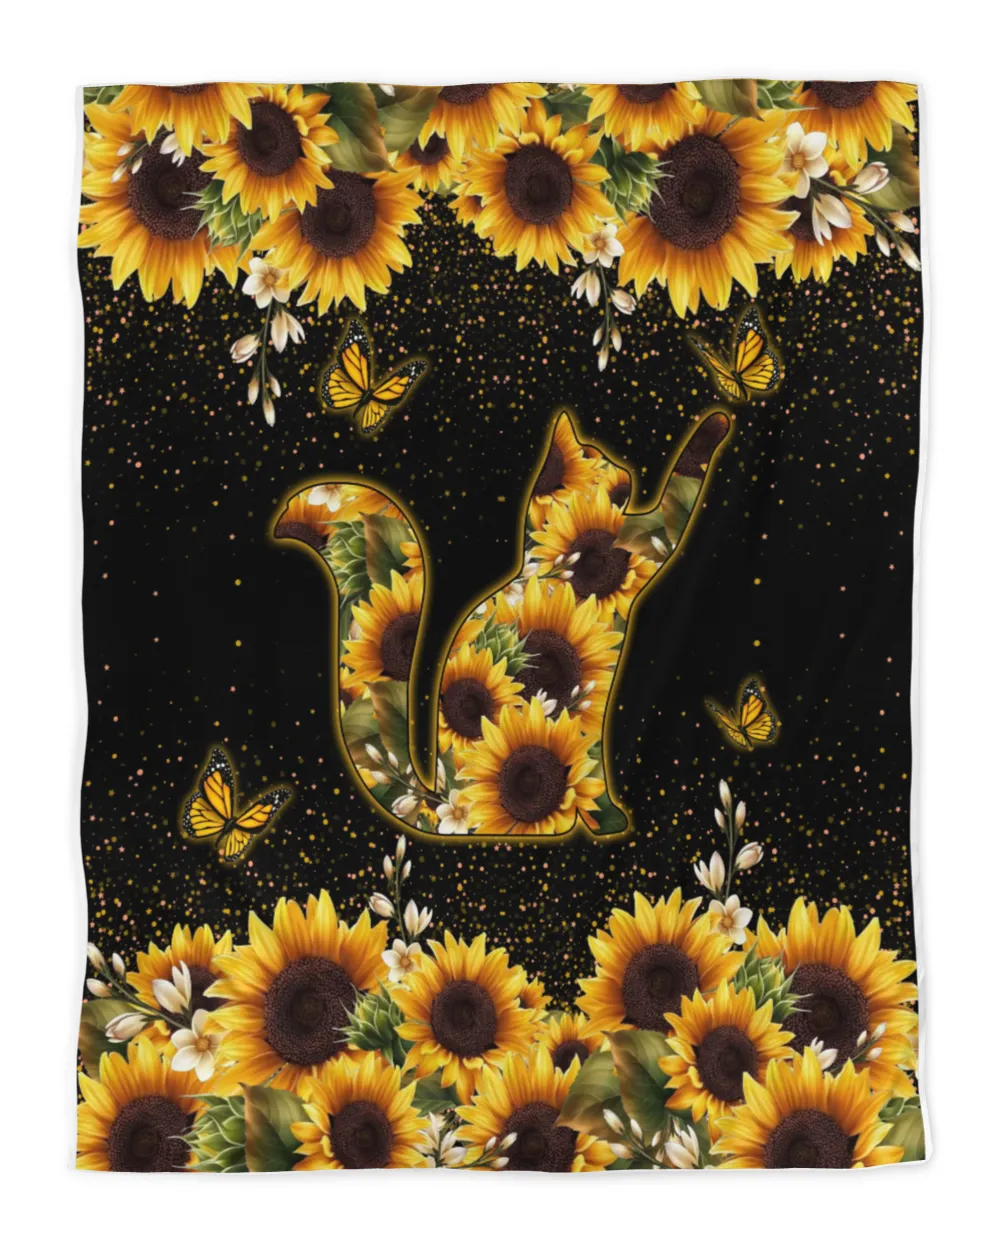 Cat Sunflower Light QBS